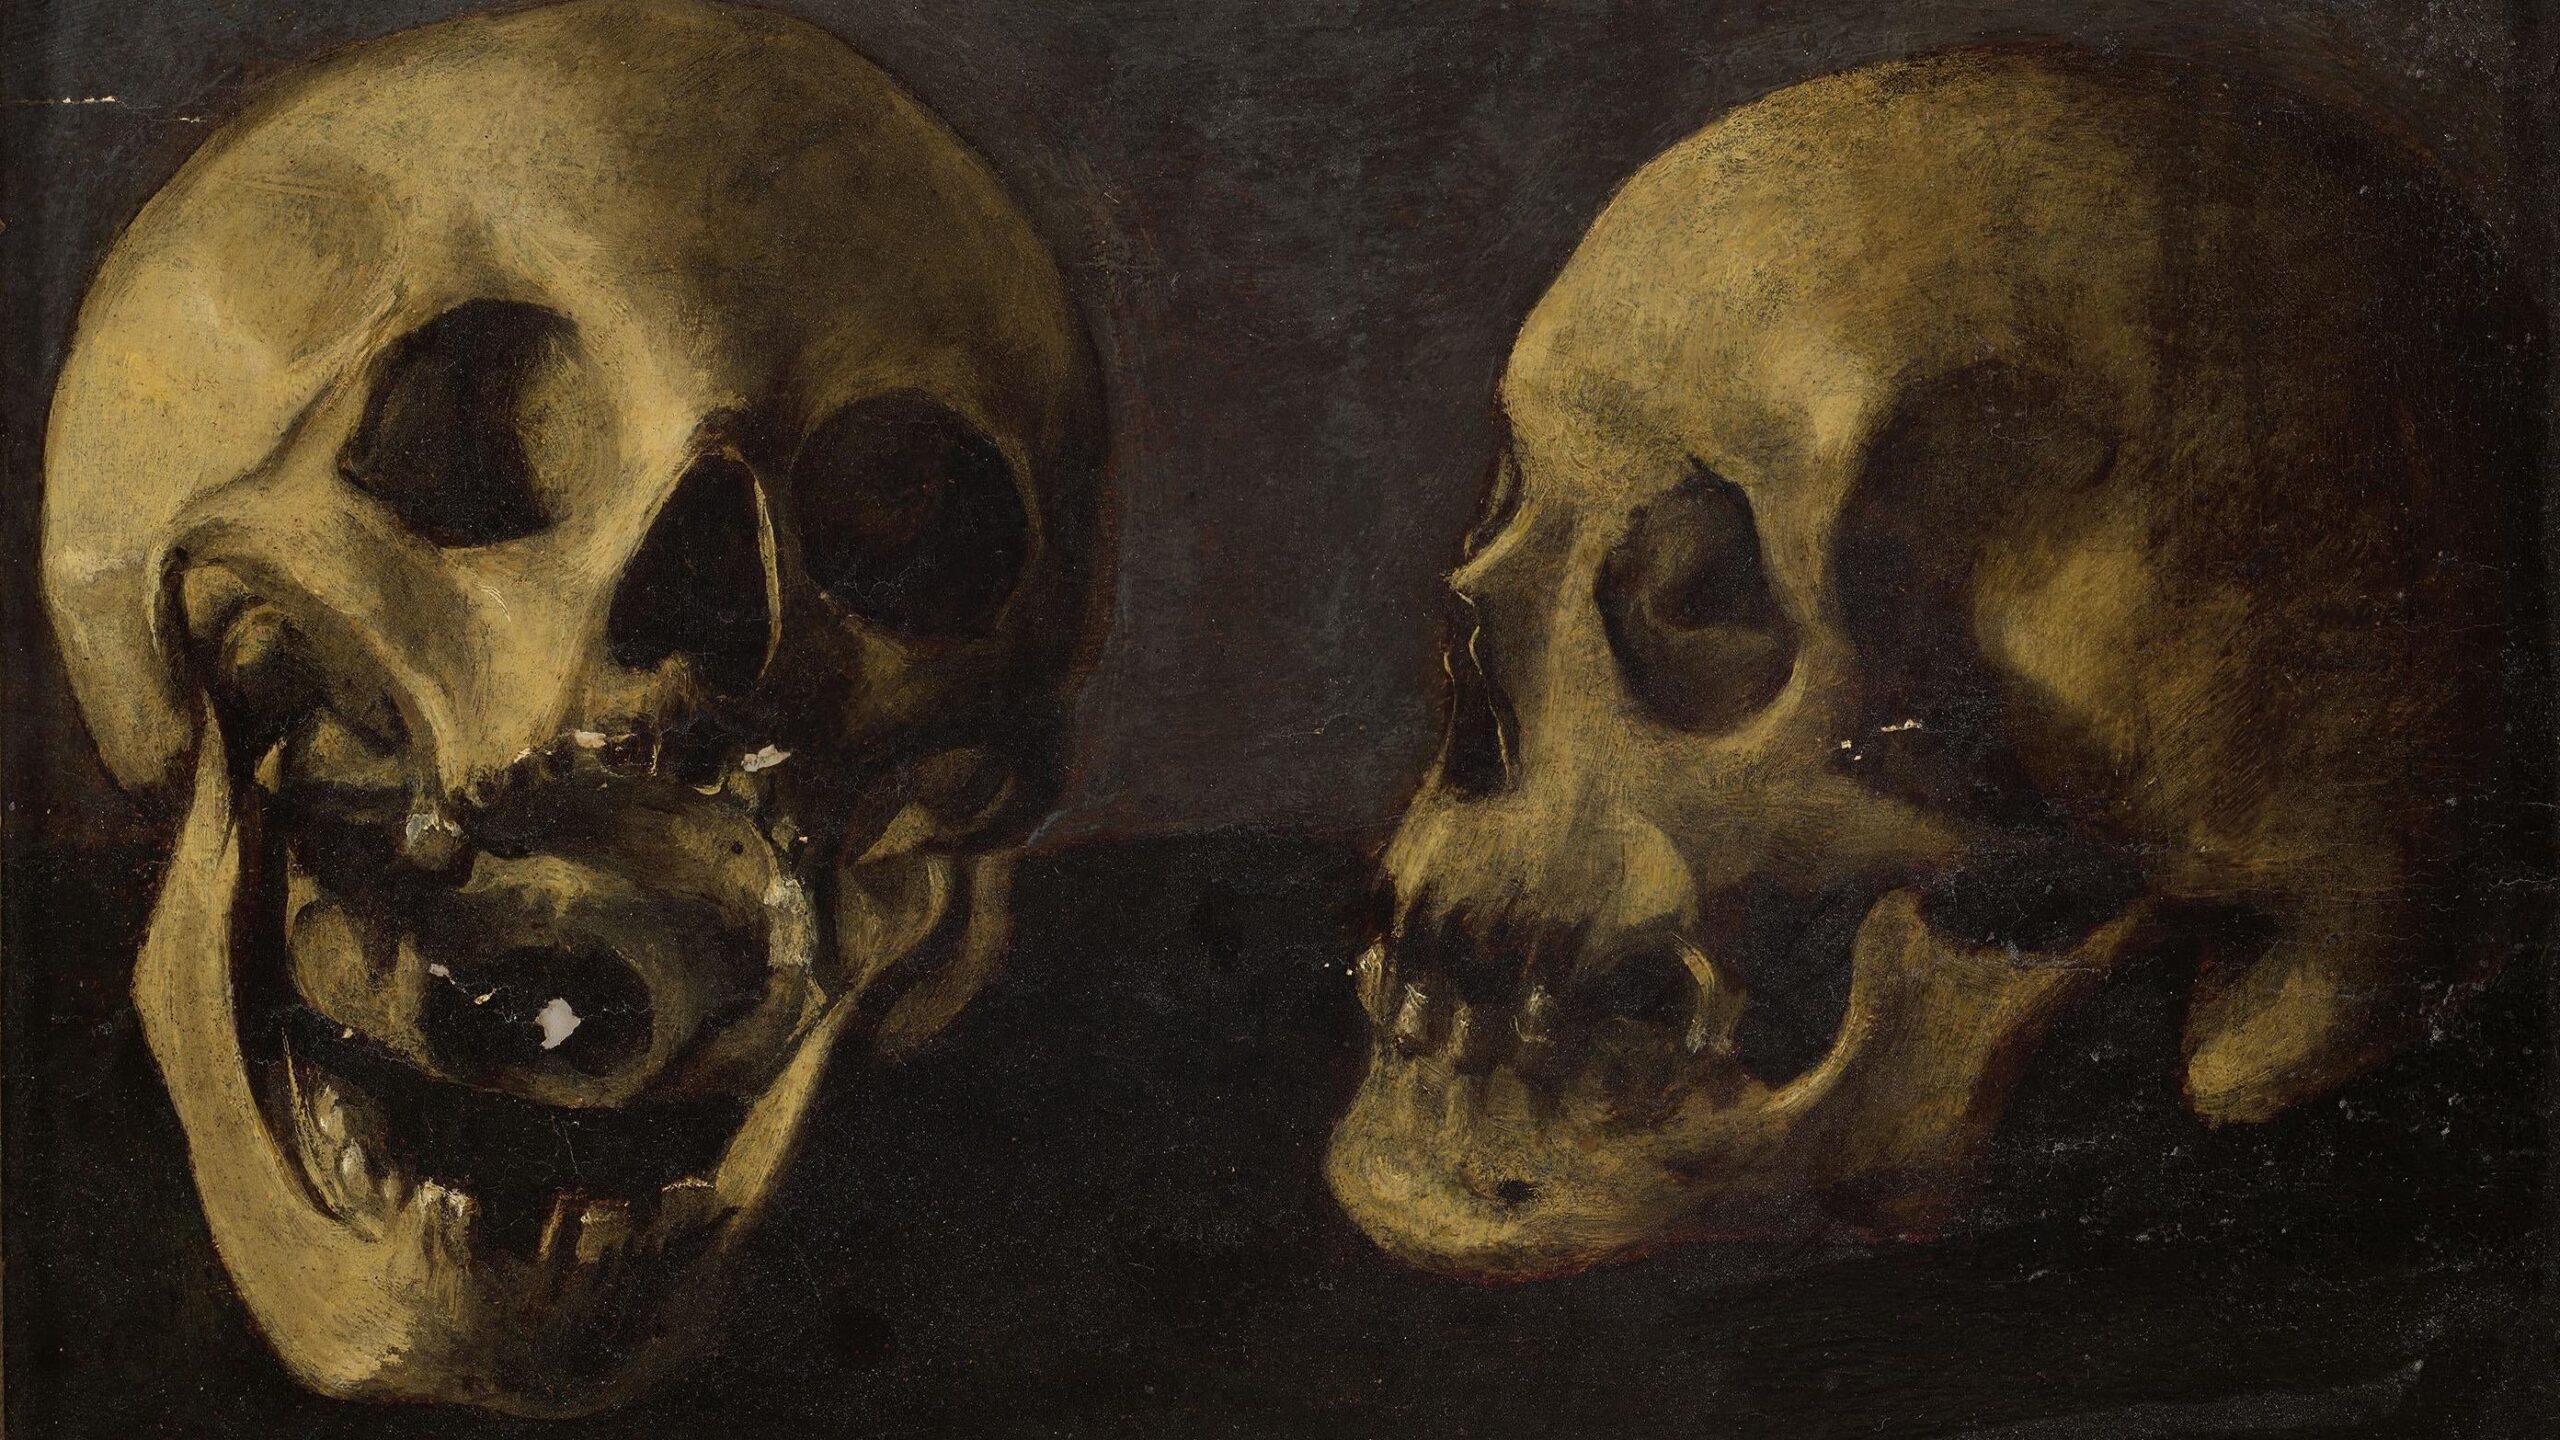 2 skulls on a black background